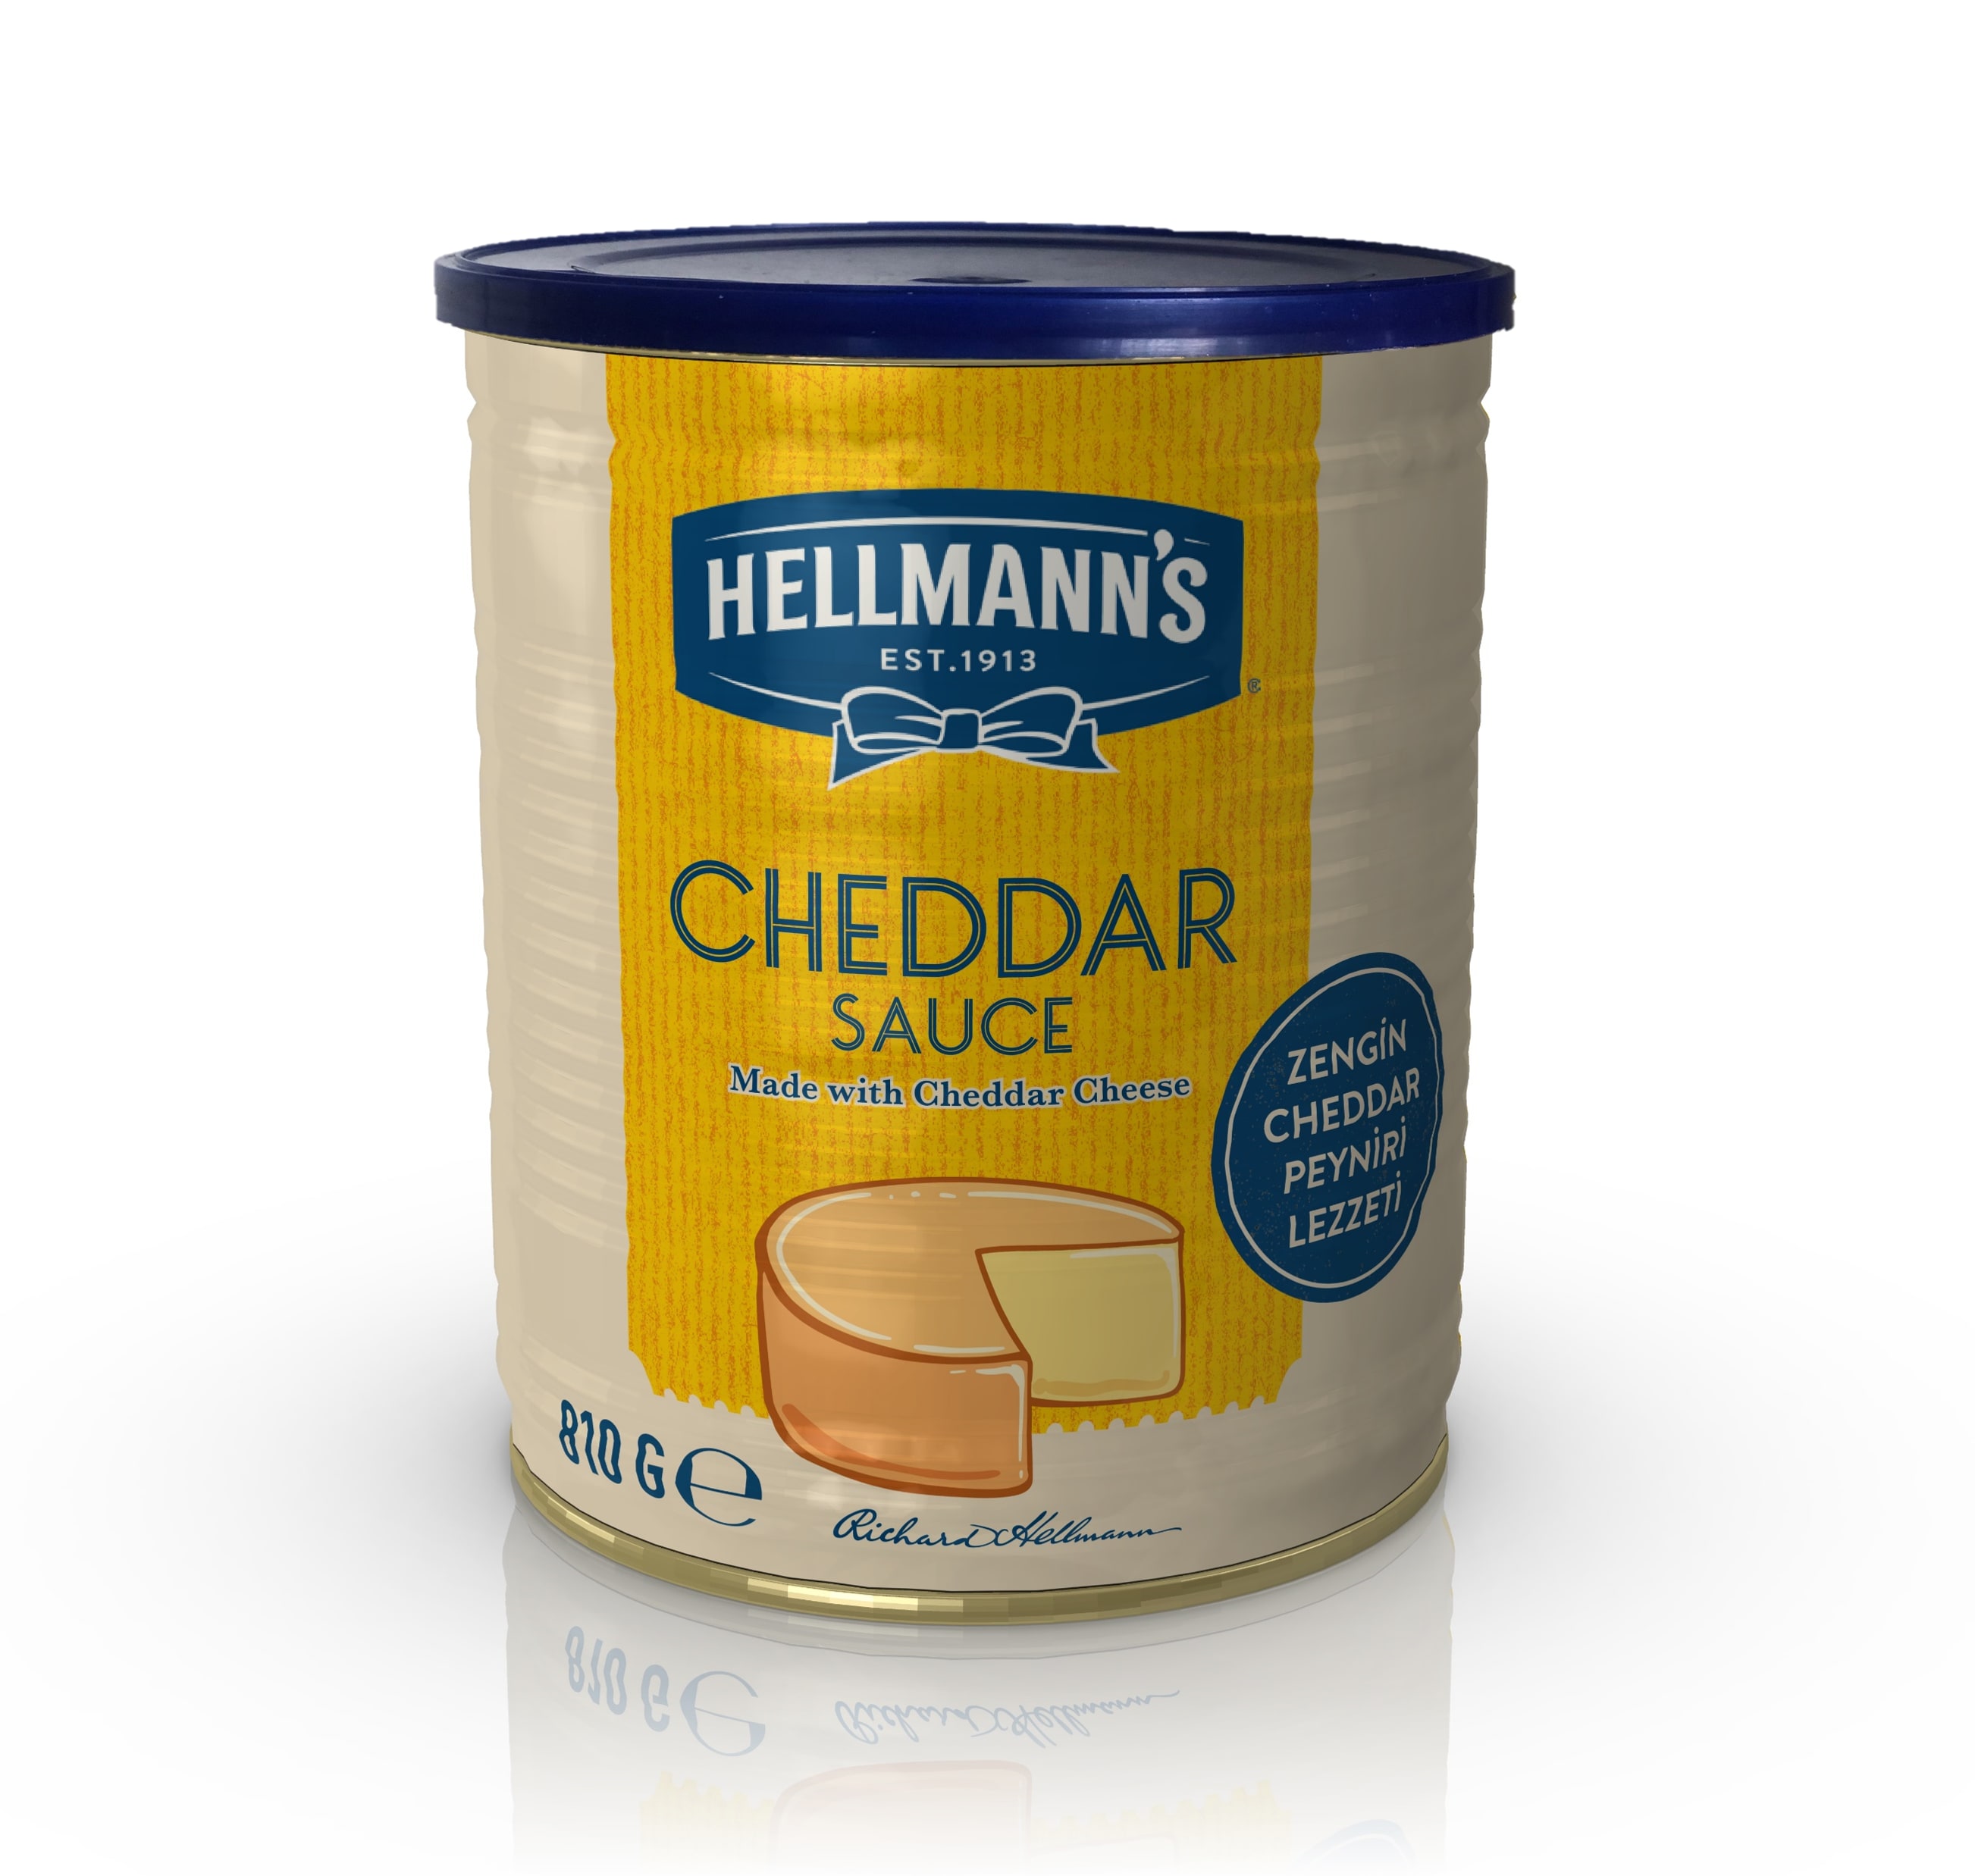 HELLMANN'S FS CHEDDAR SOS - Zengin Cheddar Peyniri lezzetini pratik bir şekilde sunan Hellmann’s Cheddar Sos ile reçetelerinizi yıldızlaştırın.